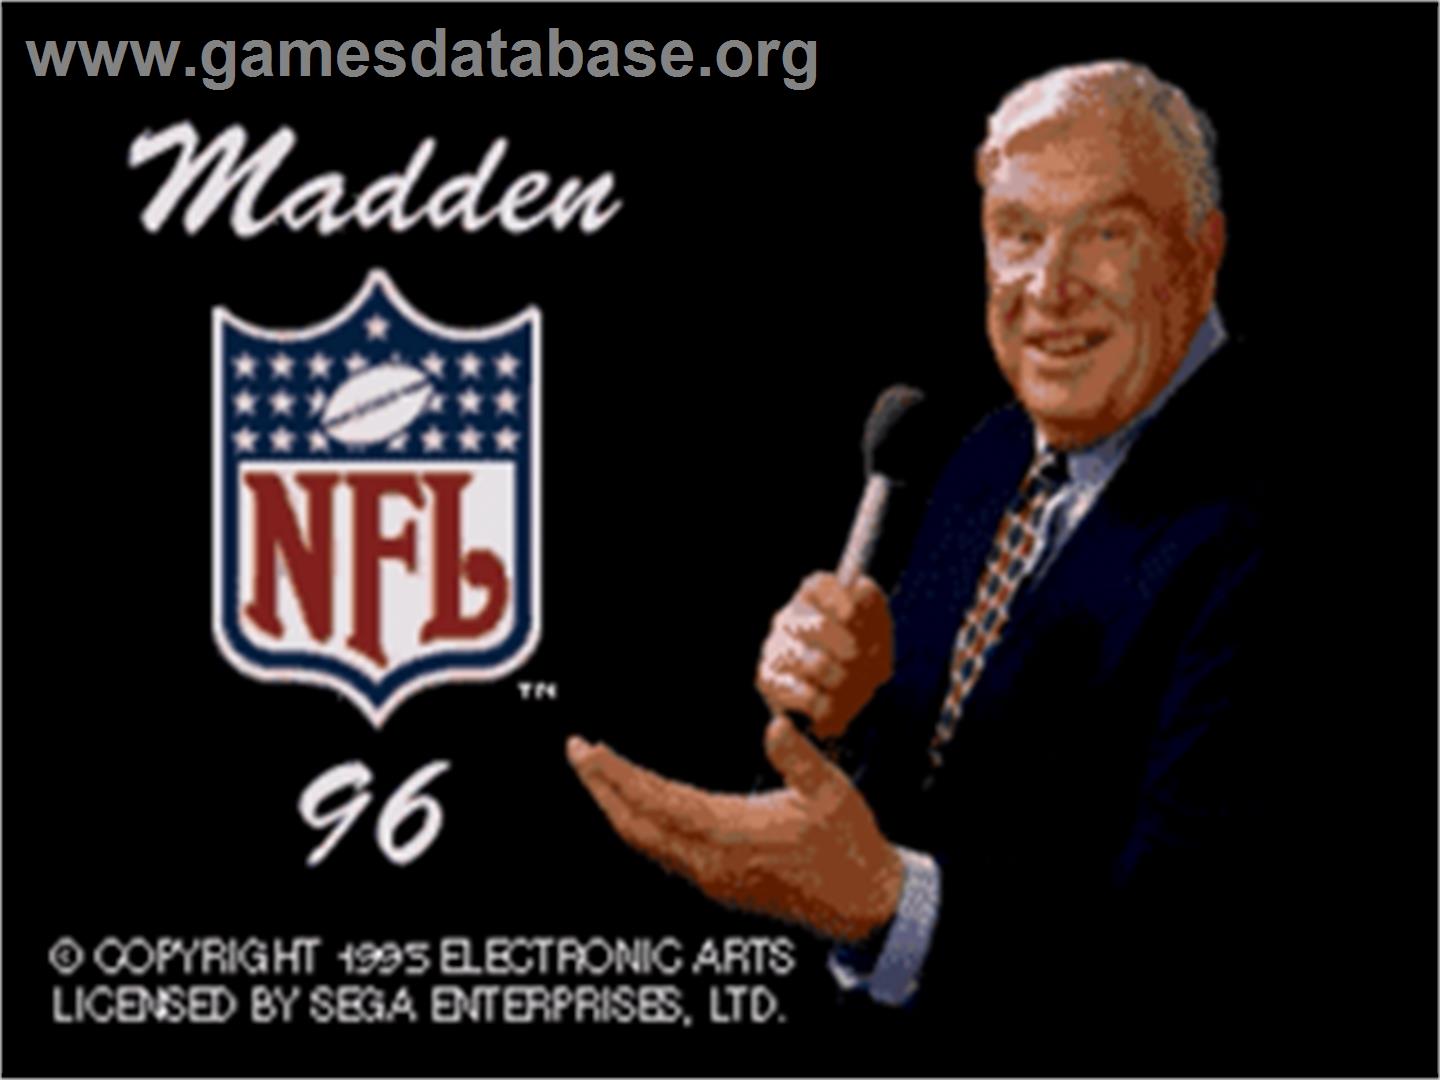 Madden NFL '96 - Sega Nomad - Artwork - Title Screen